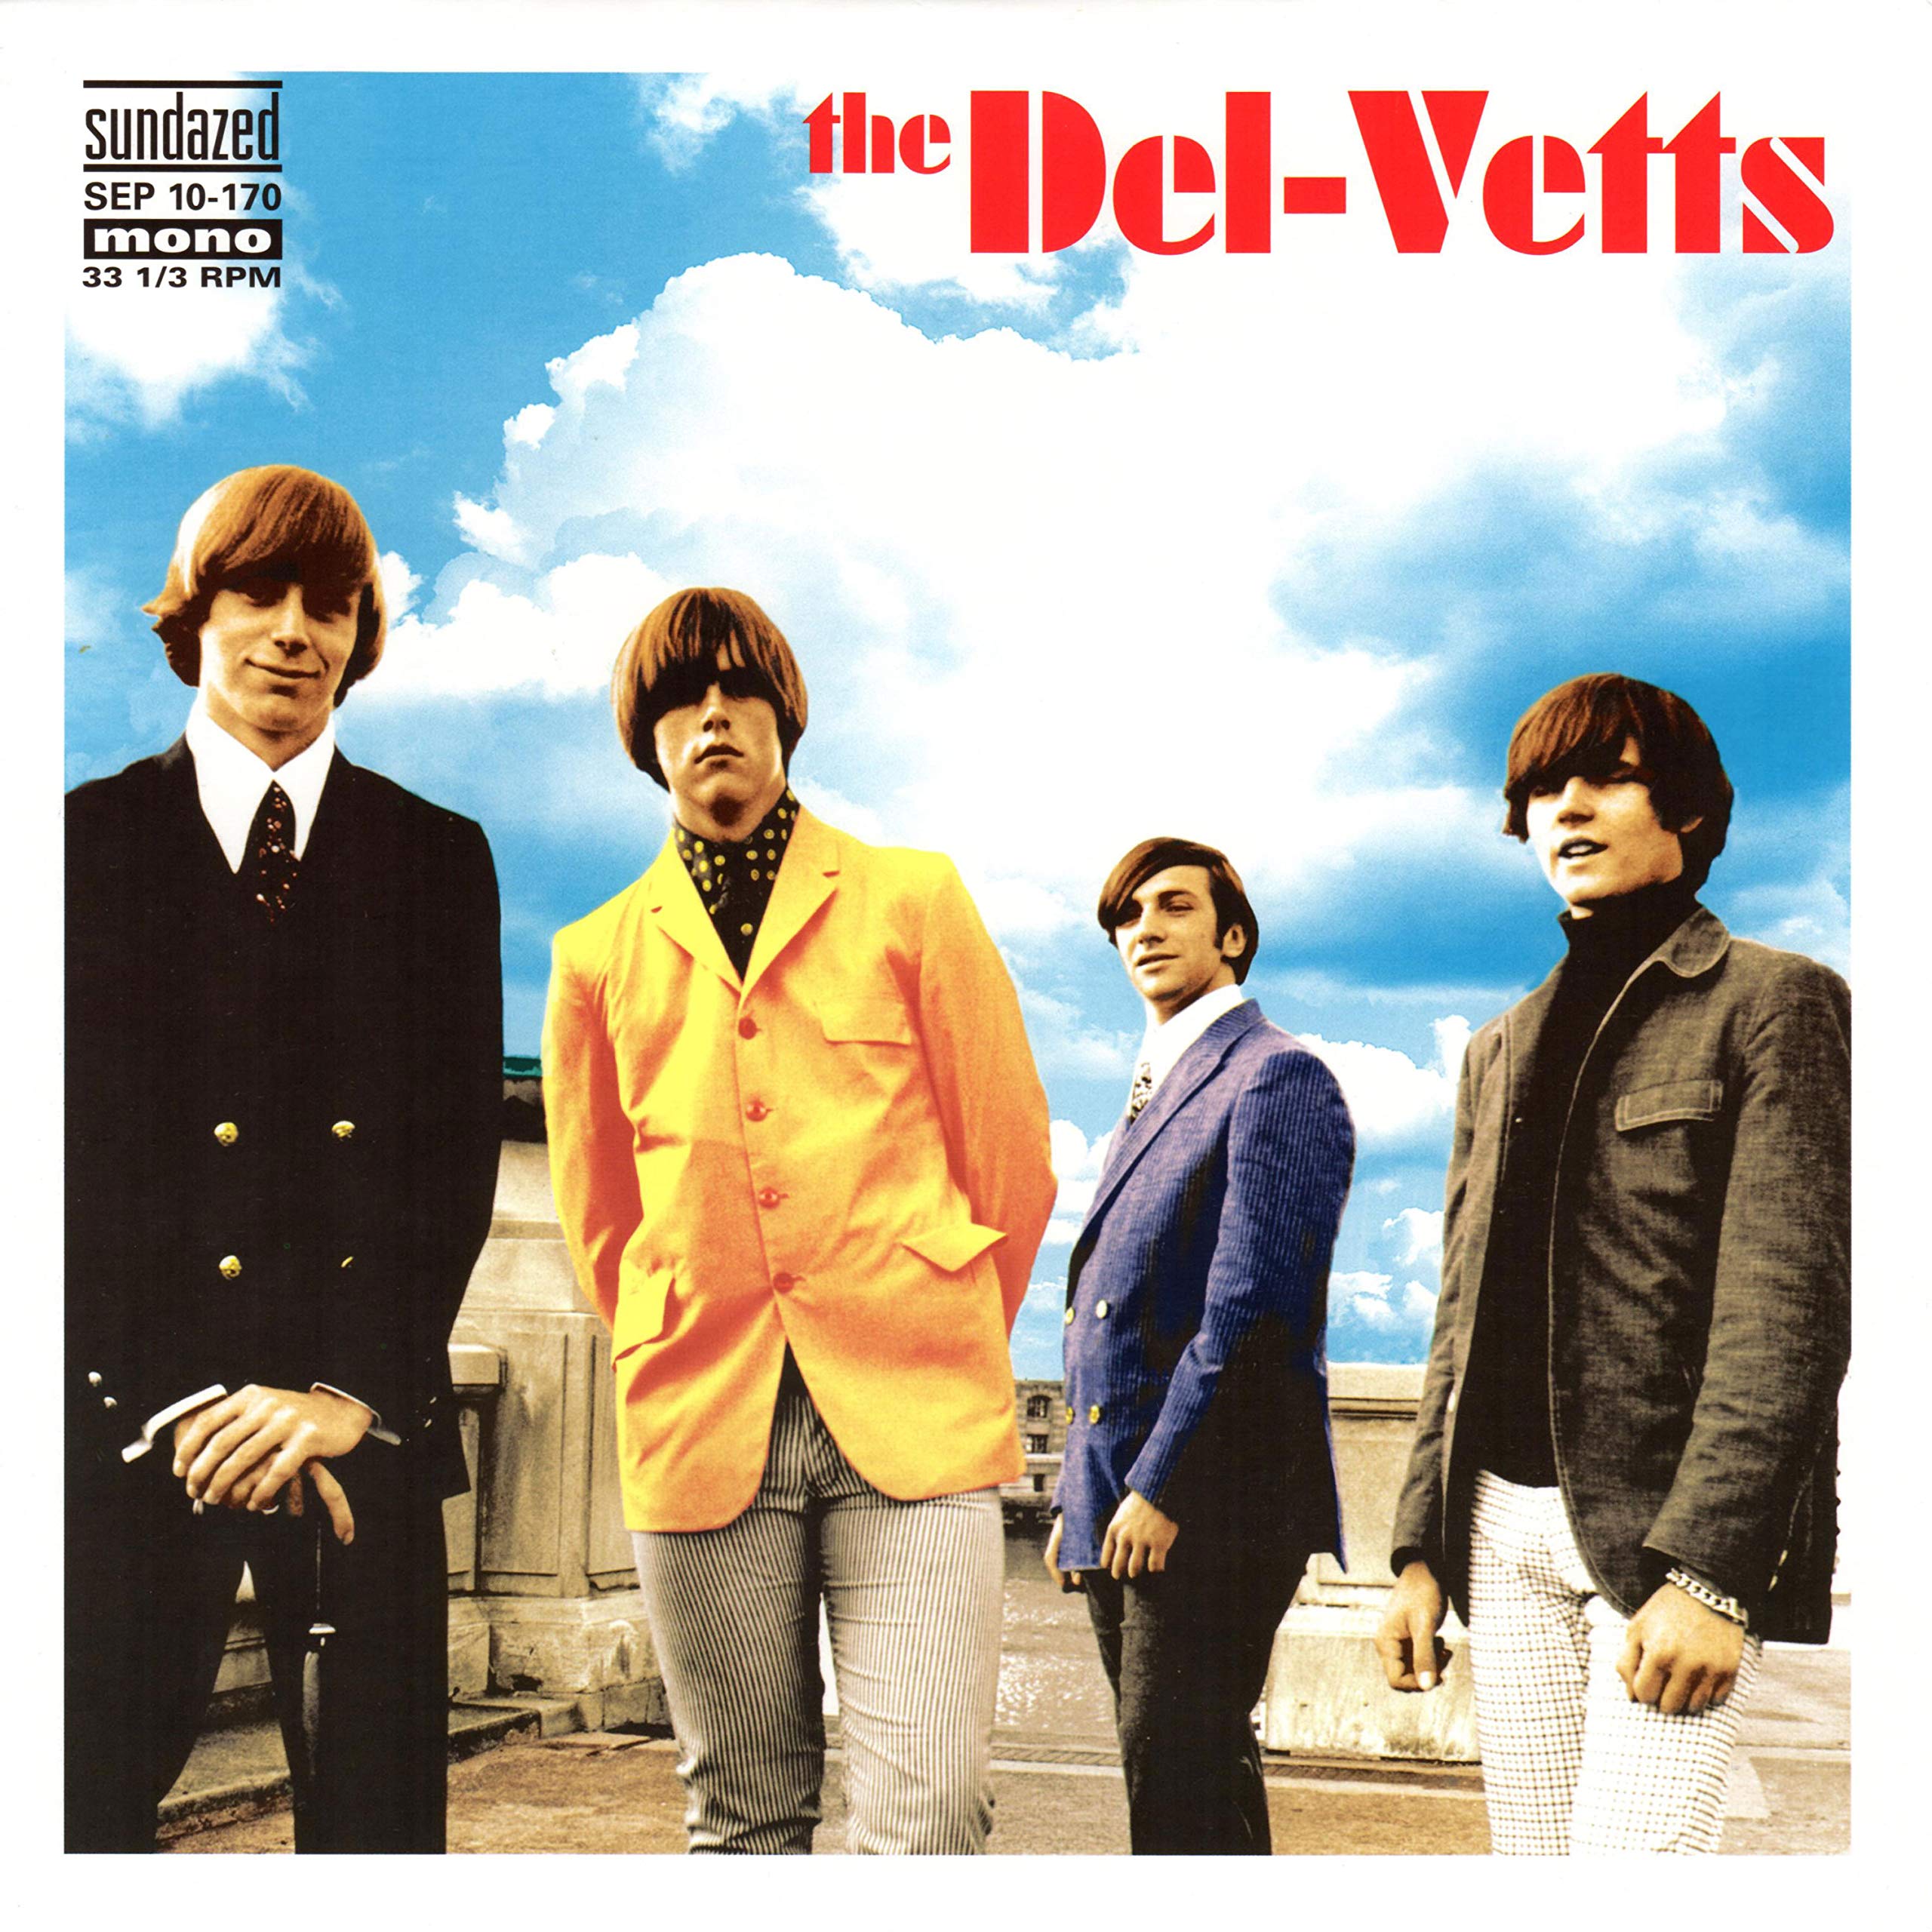 Vel-Vetts [Vinyl Single]